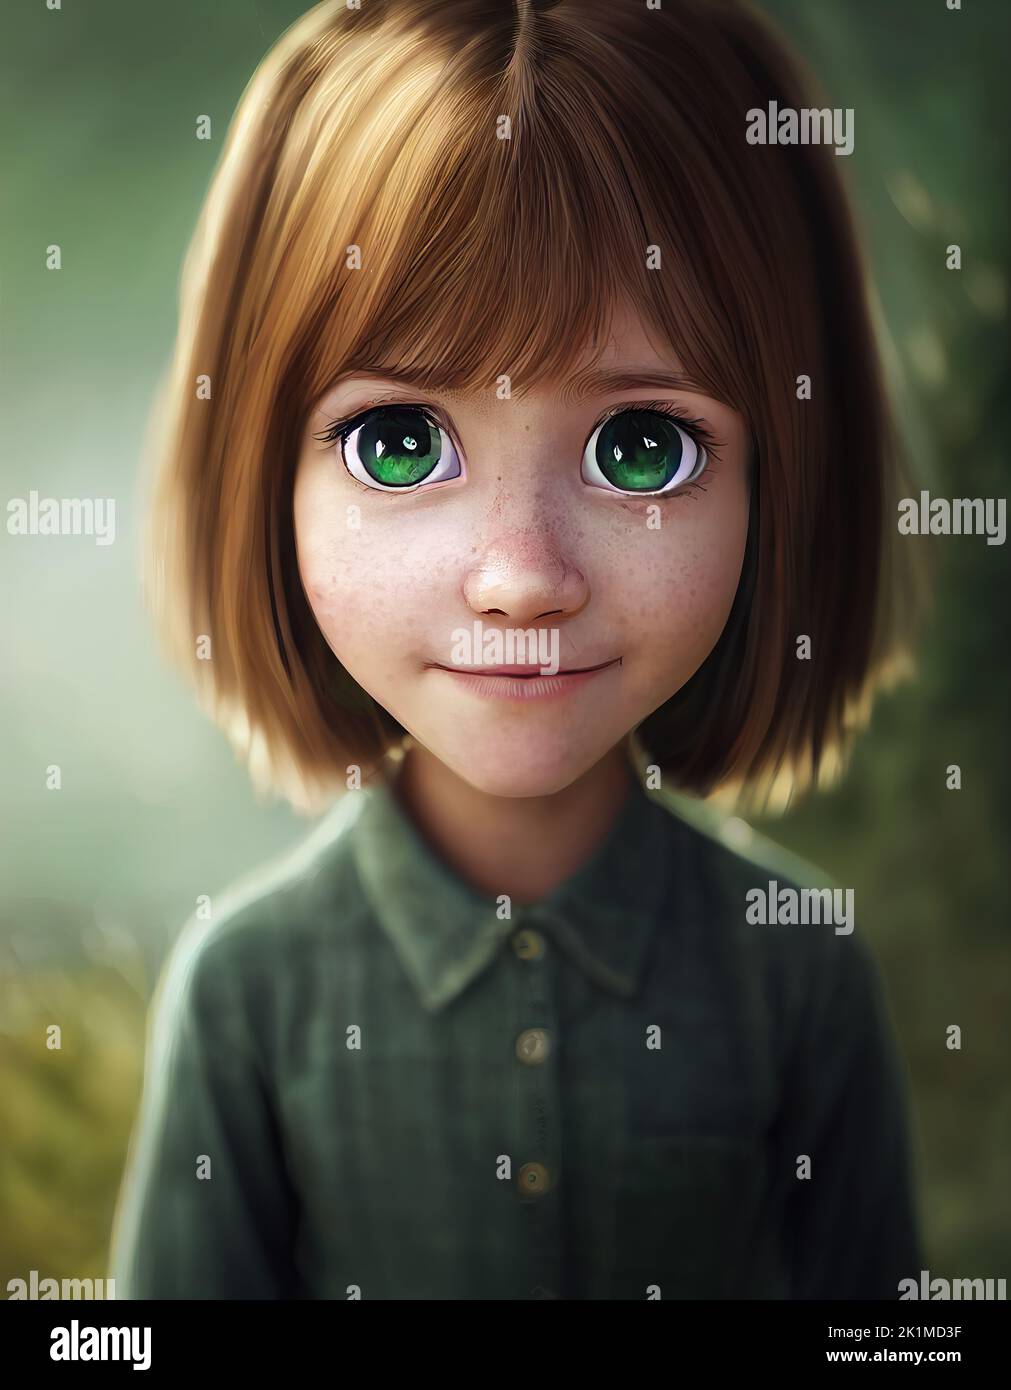 Un design a caratteri digitali. Una bambina con occhi verdi e capelli castani. Foto Stock